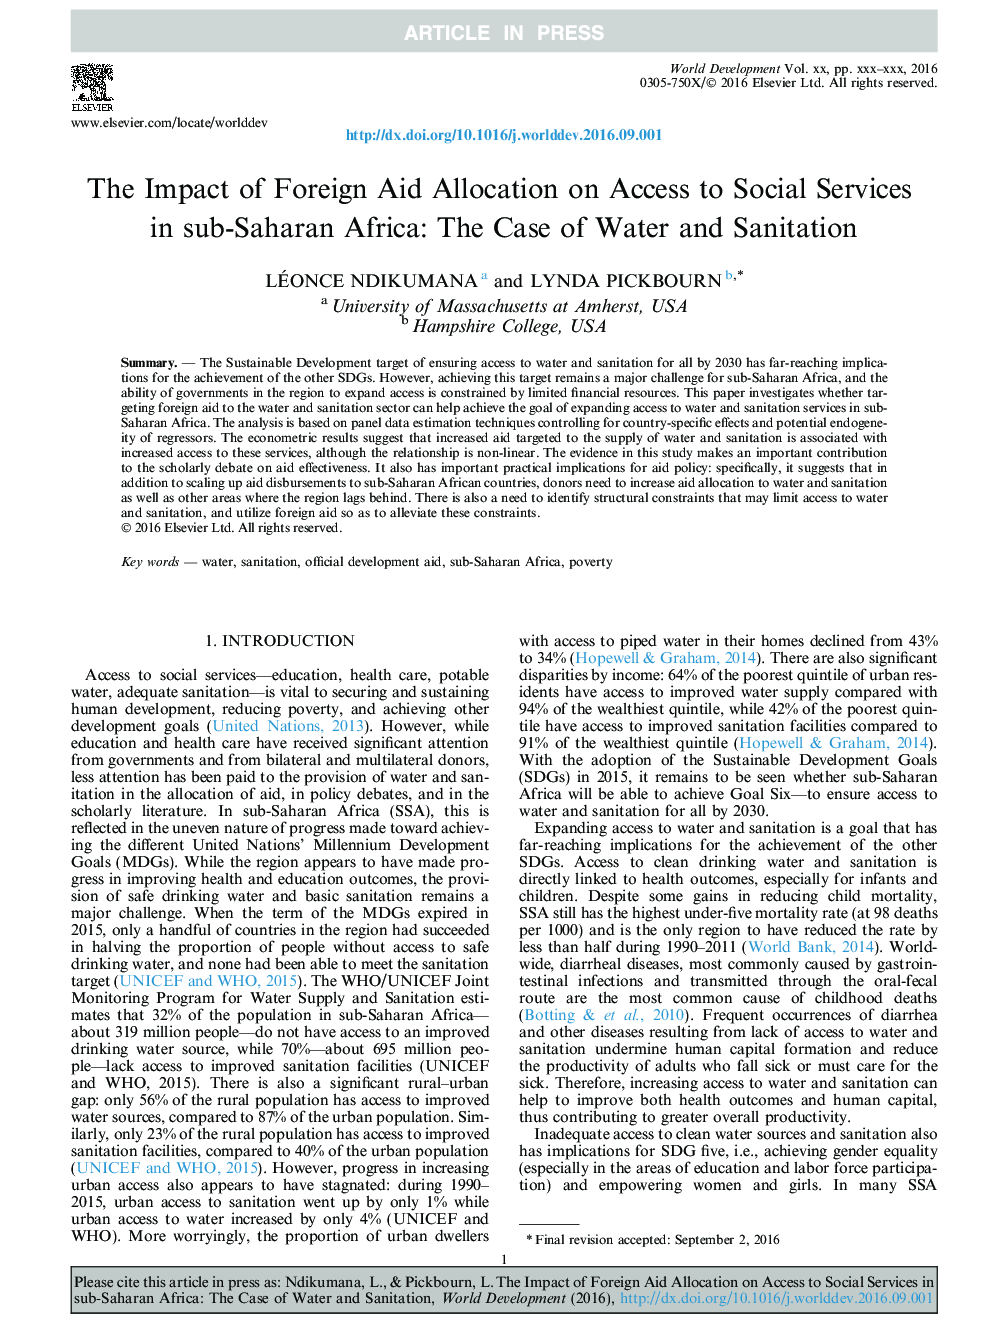 تأثیر تخصیص کمک های خارجی به دسترسی به خدمات اجتماعی در کشورهای جنوب صحرای آفریقا: مورد آب و بهداشت 